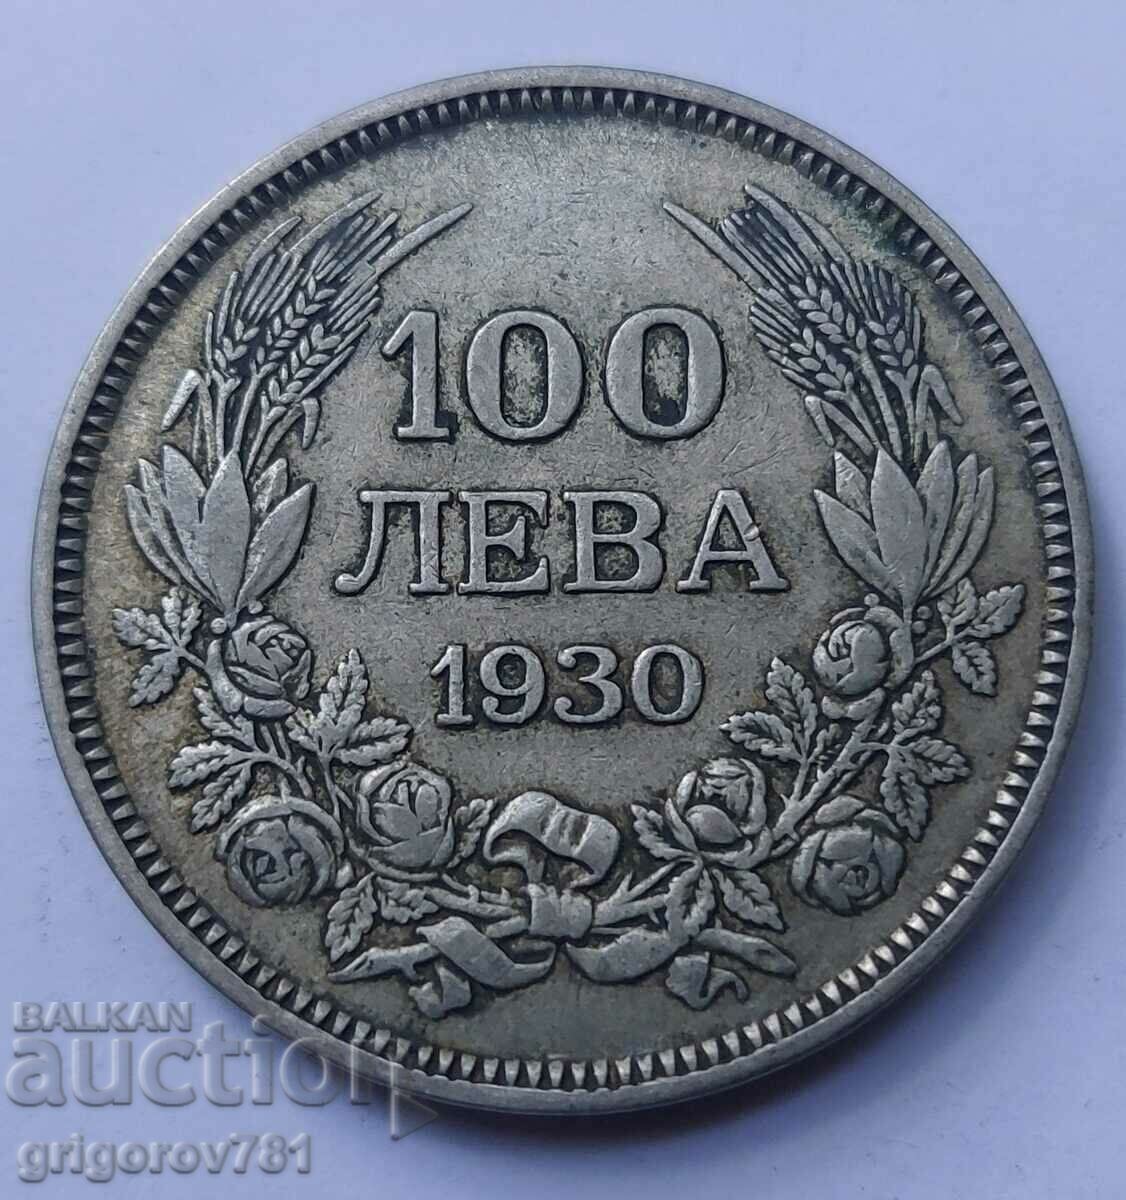 Ασήμι 100 λέβα Βουλγαρία 1930 - ασημένιο νόμισμα #32